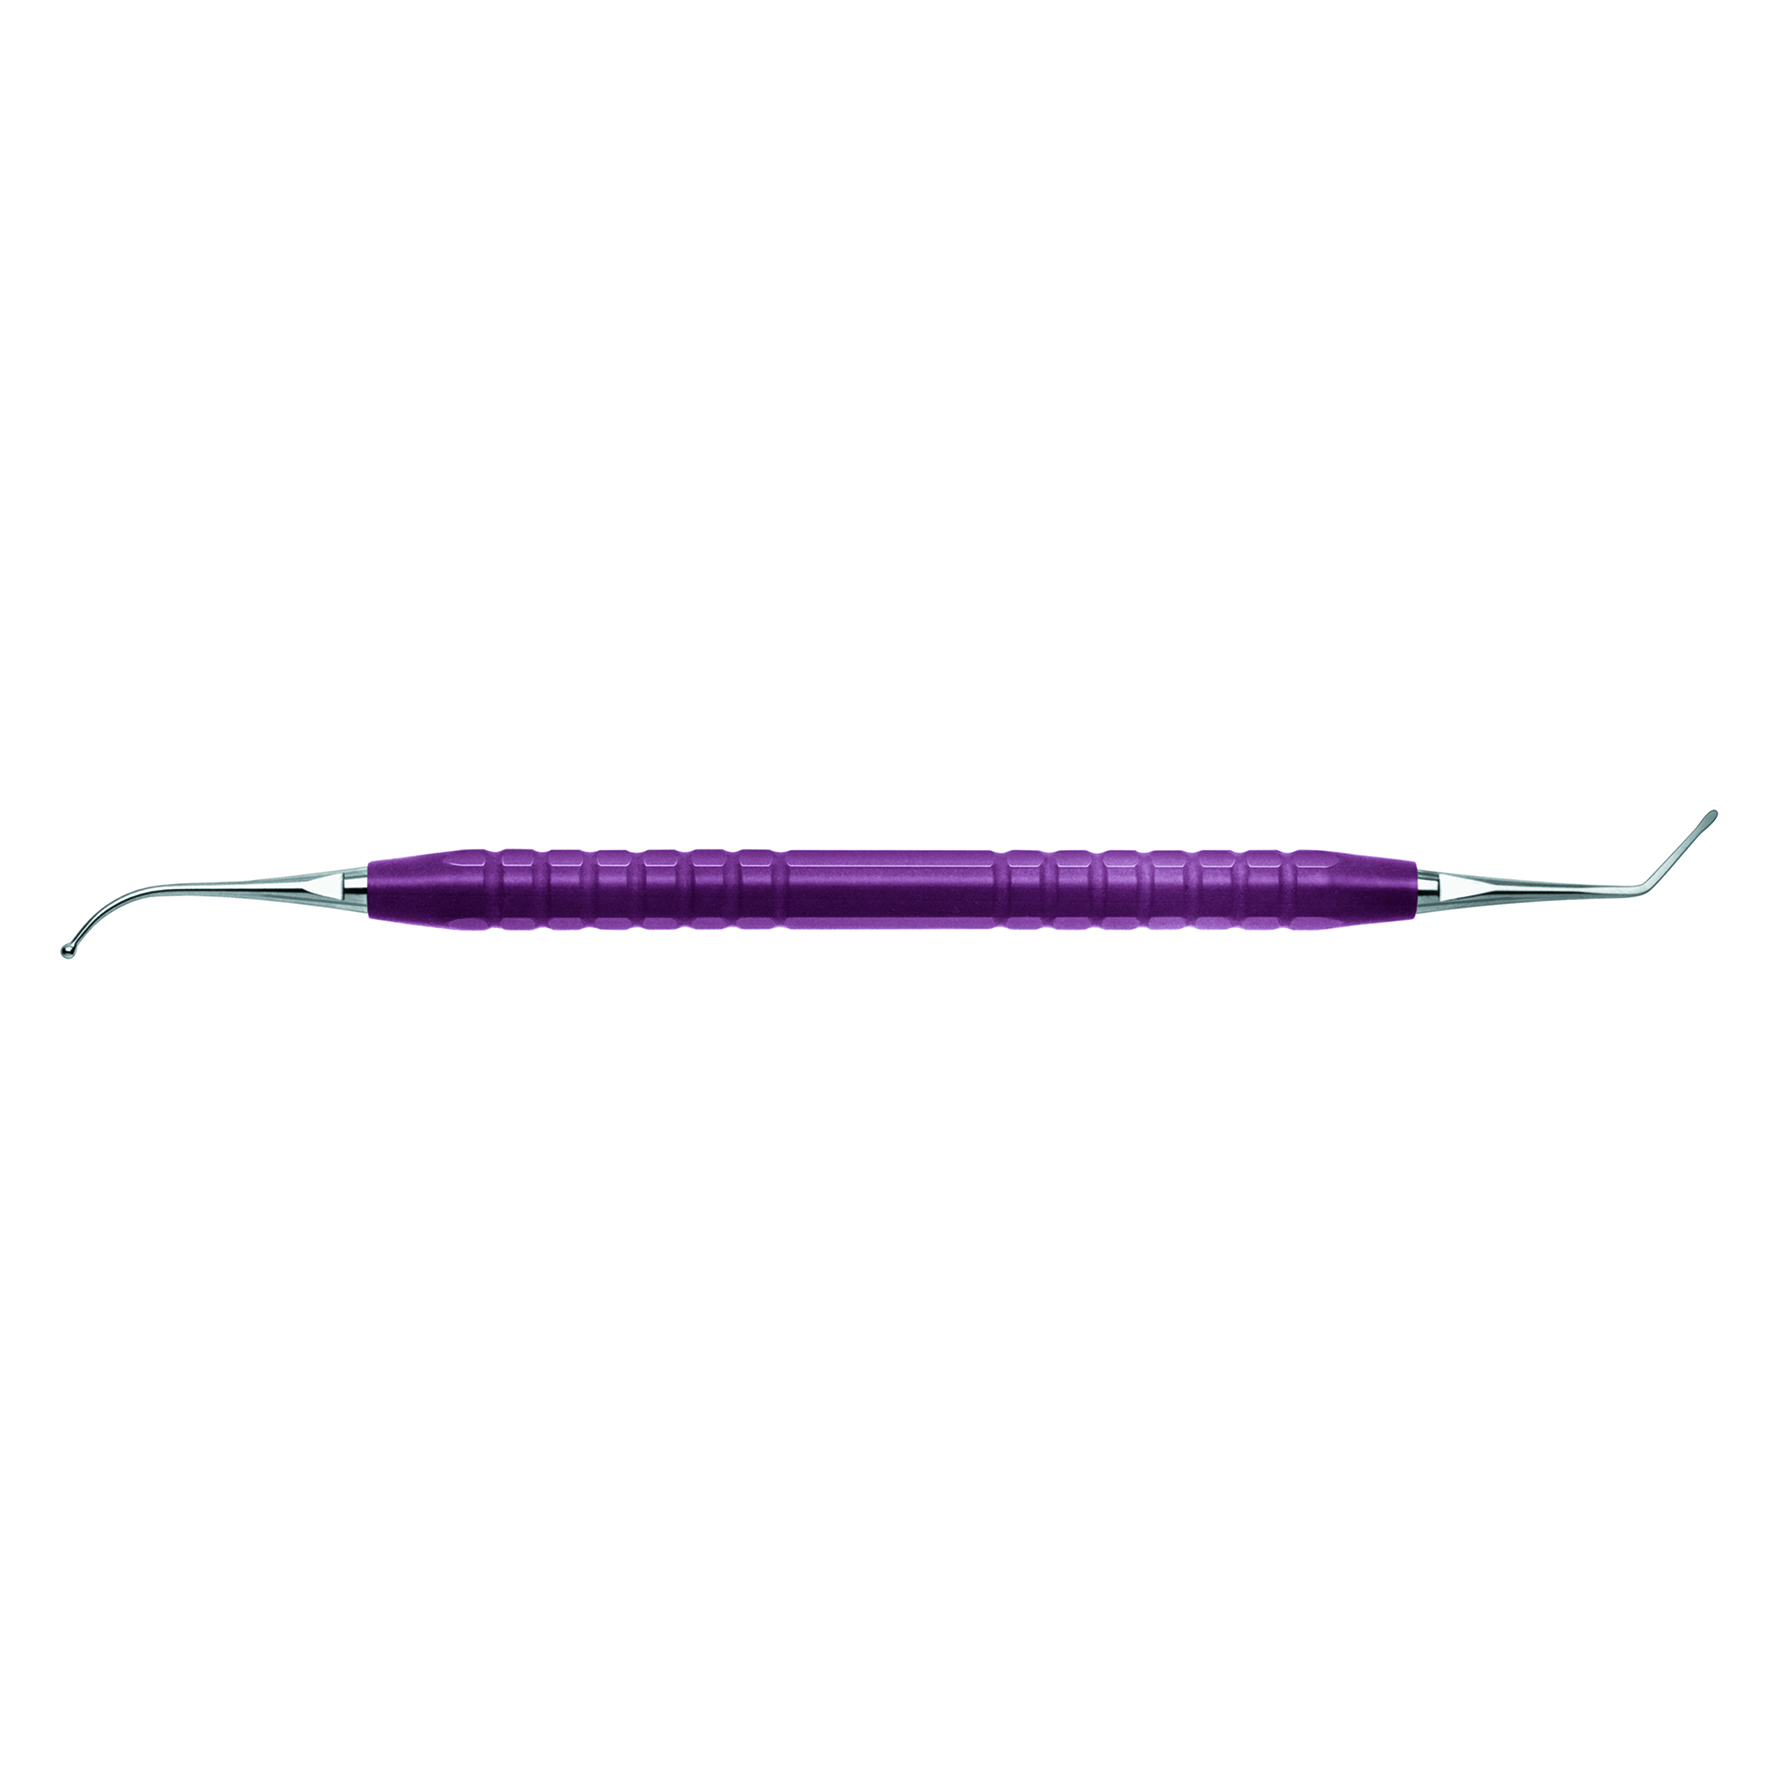 スヘリカル プラガー #B φ1.5/1.5mm (紫)